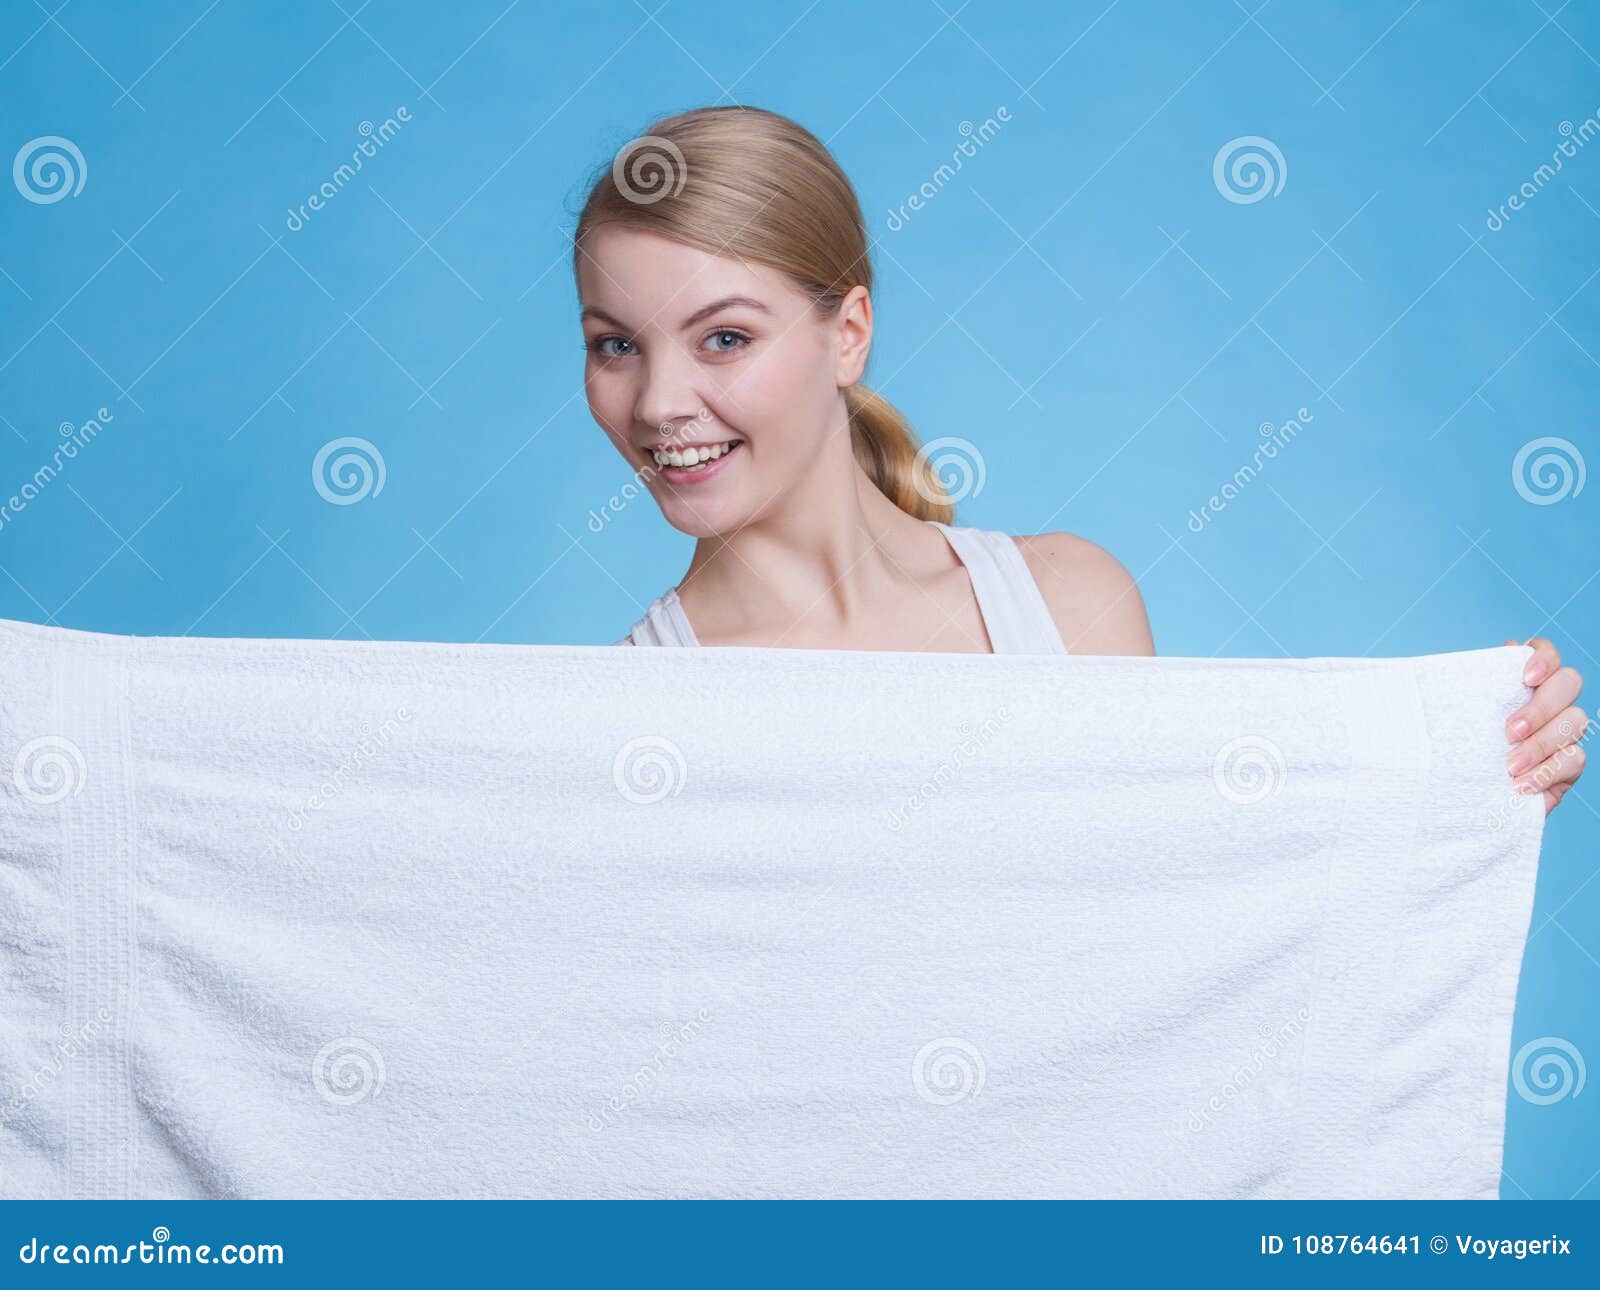 Работа в полотенце. Человек в полотенце. Девушка держит полотенце. Девушка в белом полотенце. Девушка с полотенцем в руках.